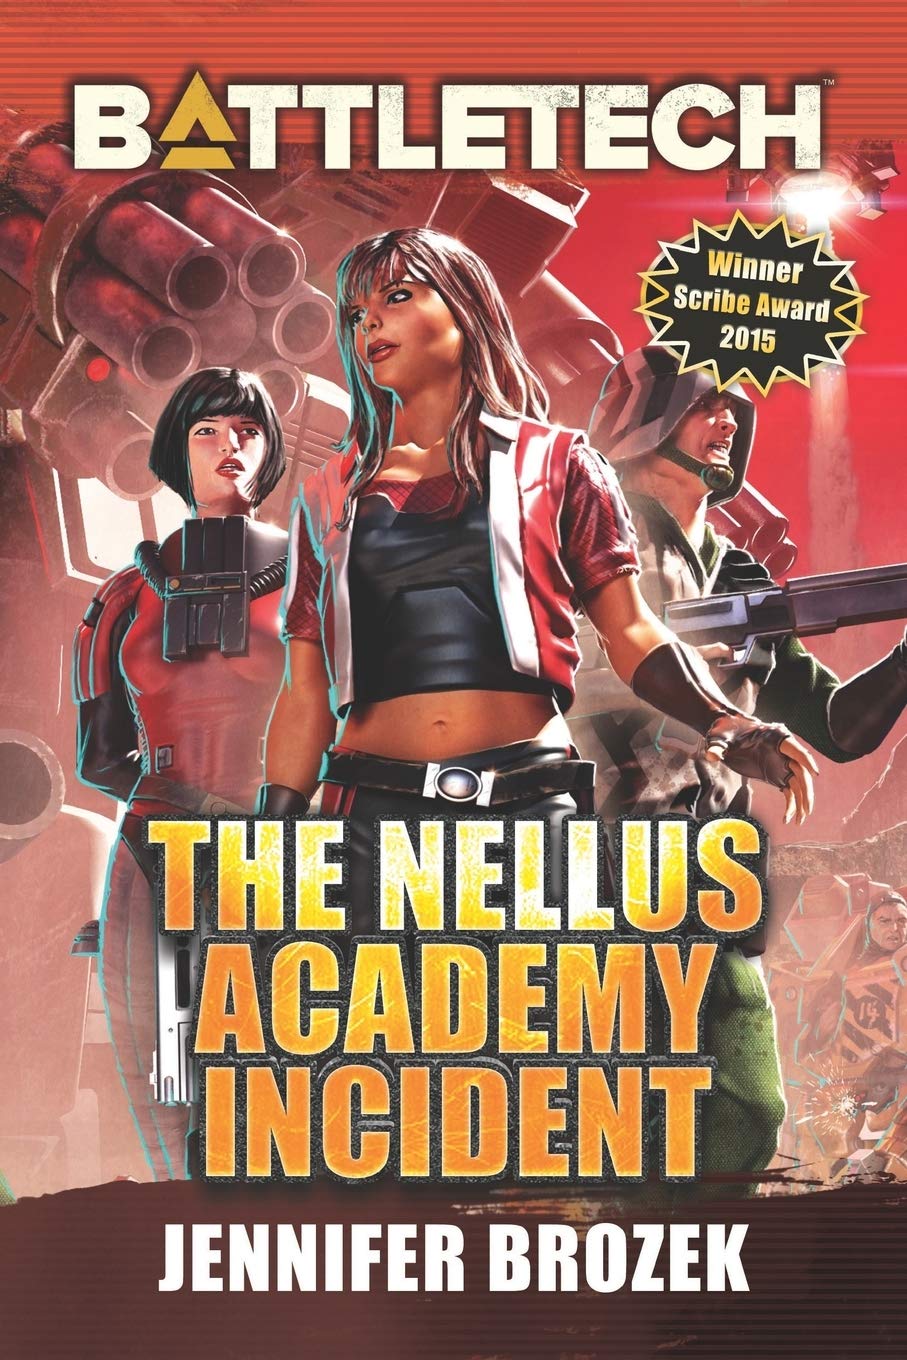 The Nellus Academy Incident – Hörbuch erschienen